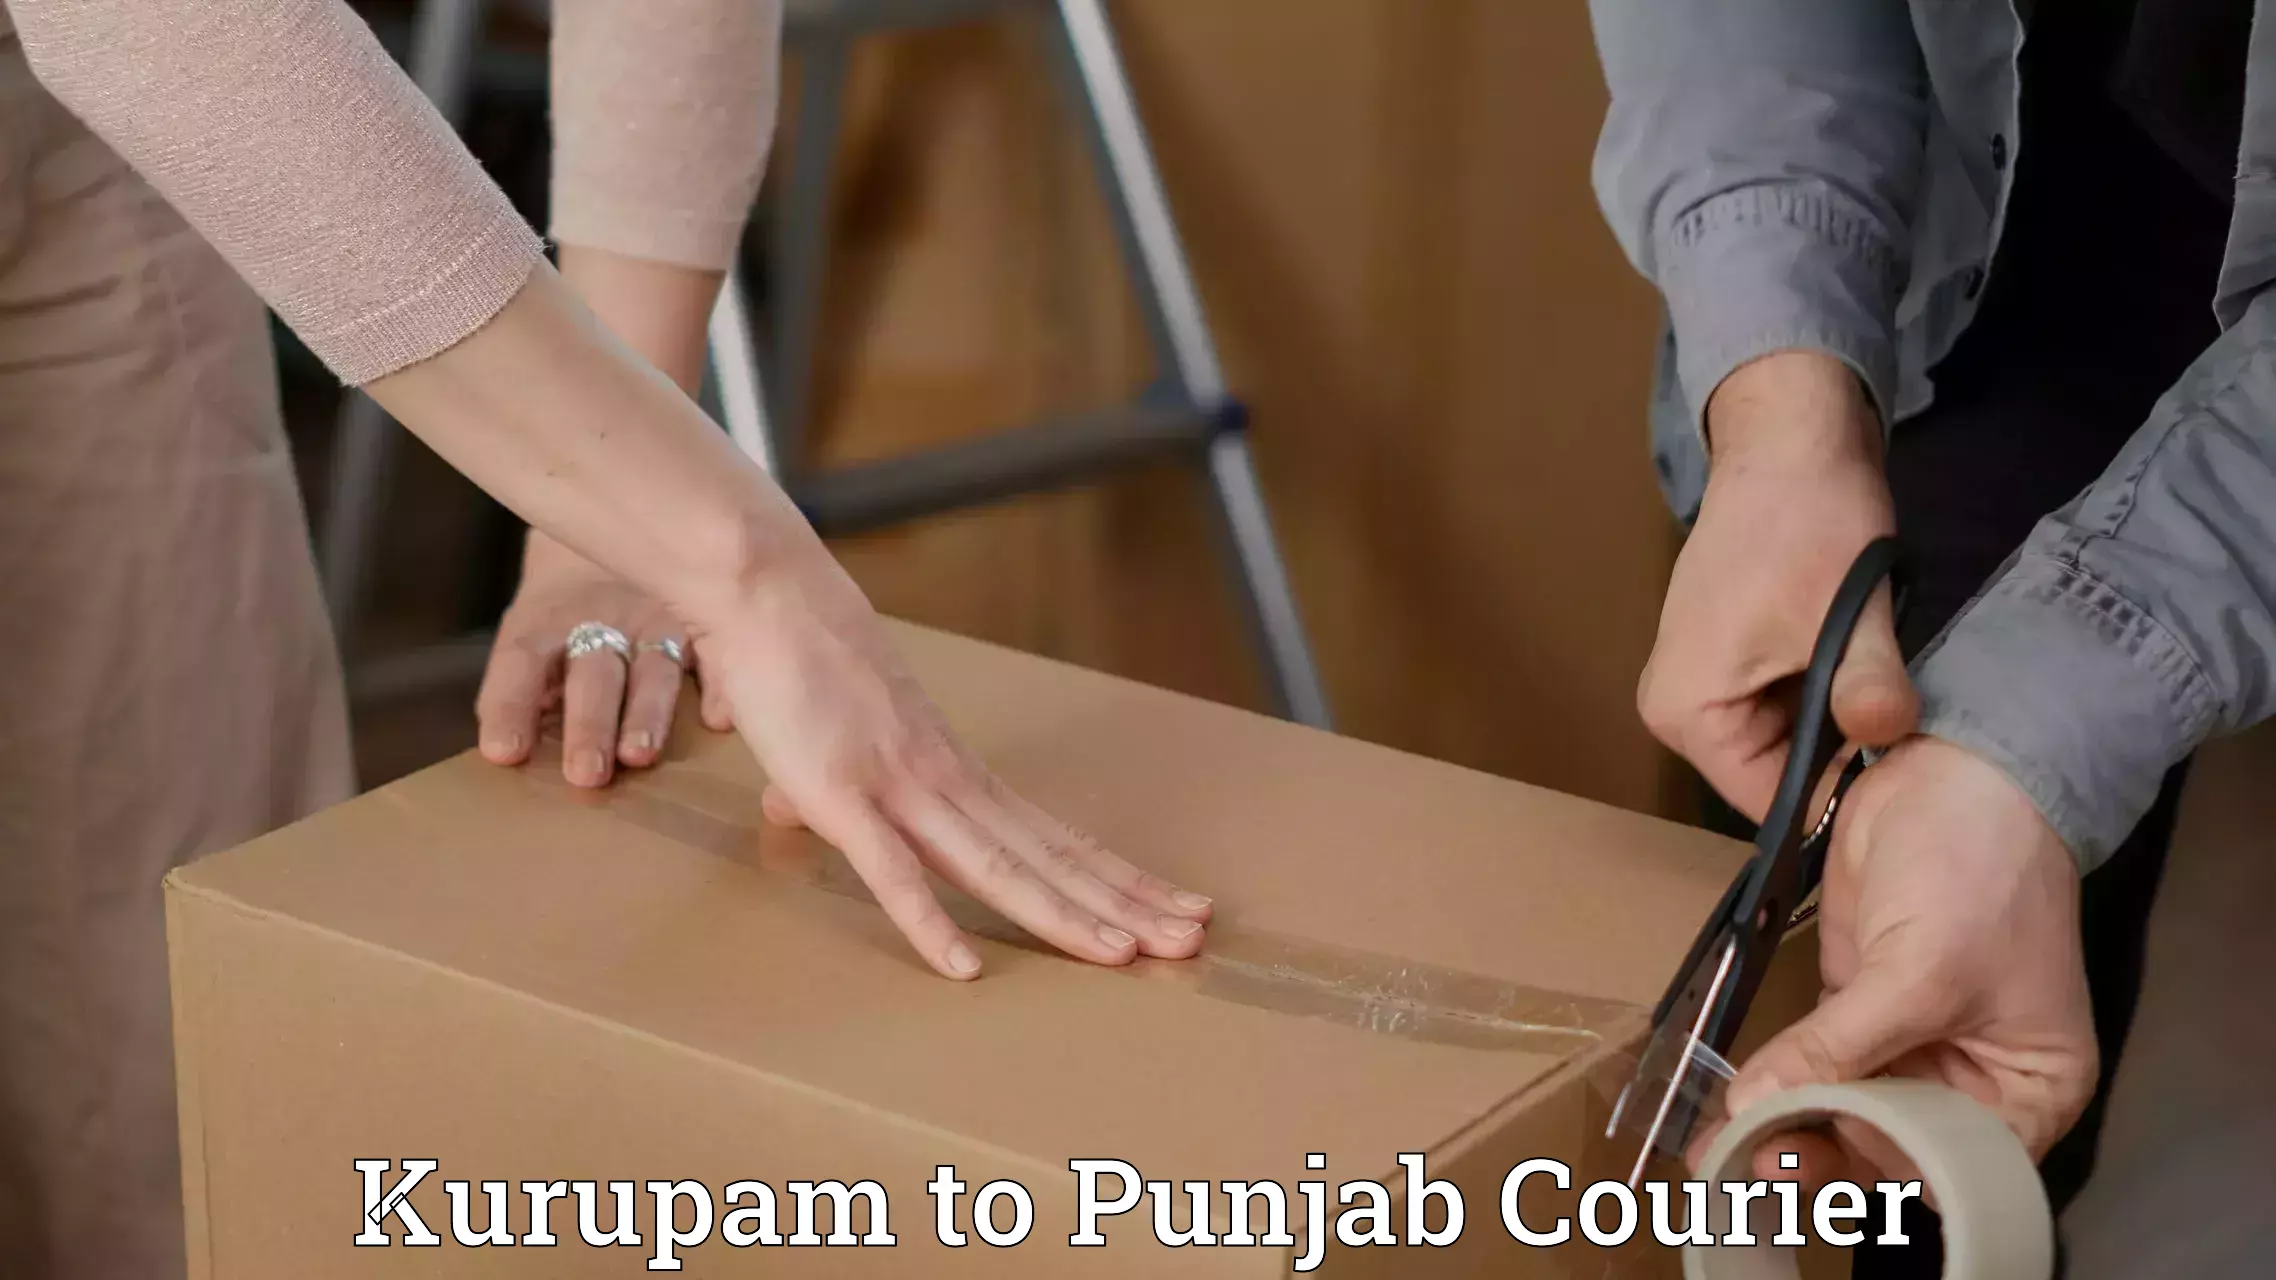 Shipping and handling Kurupam to Punjab